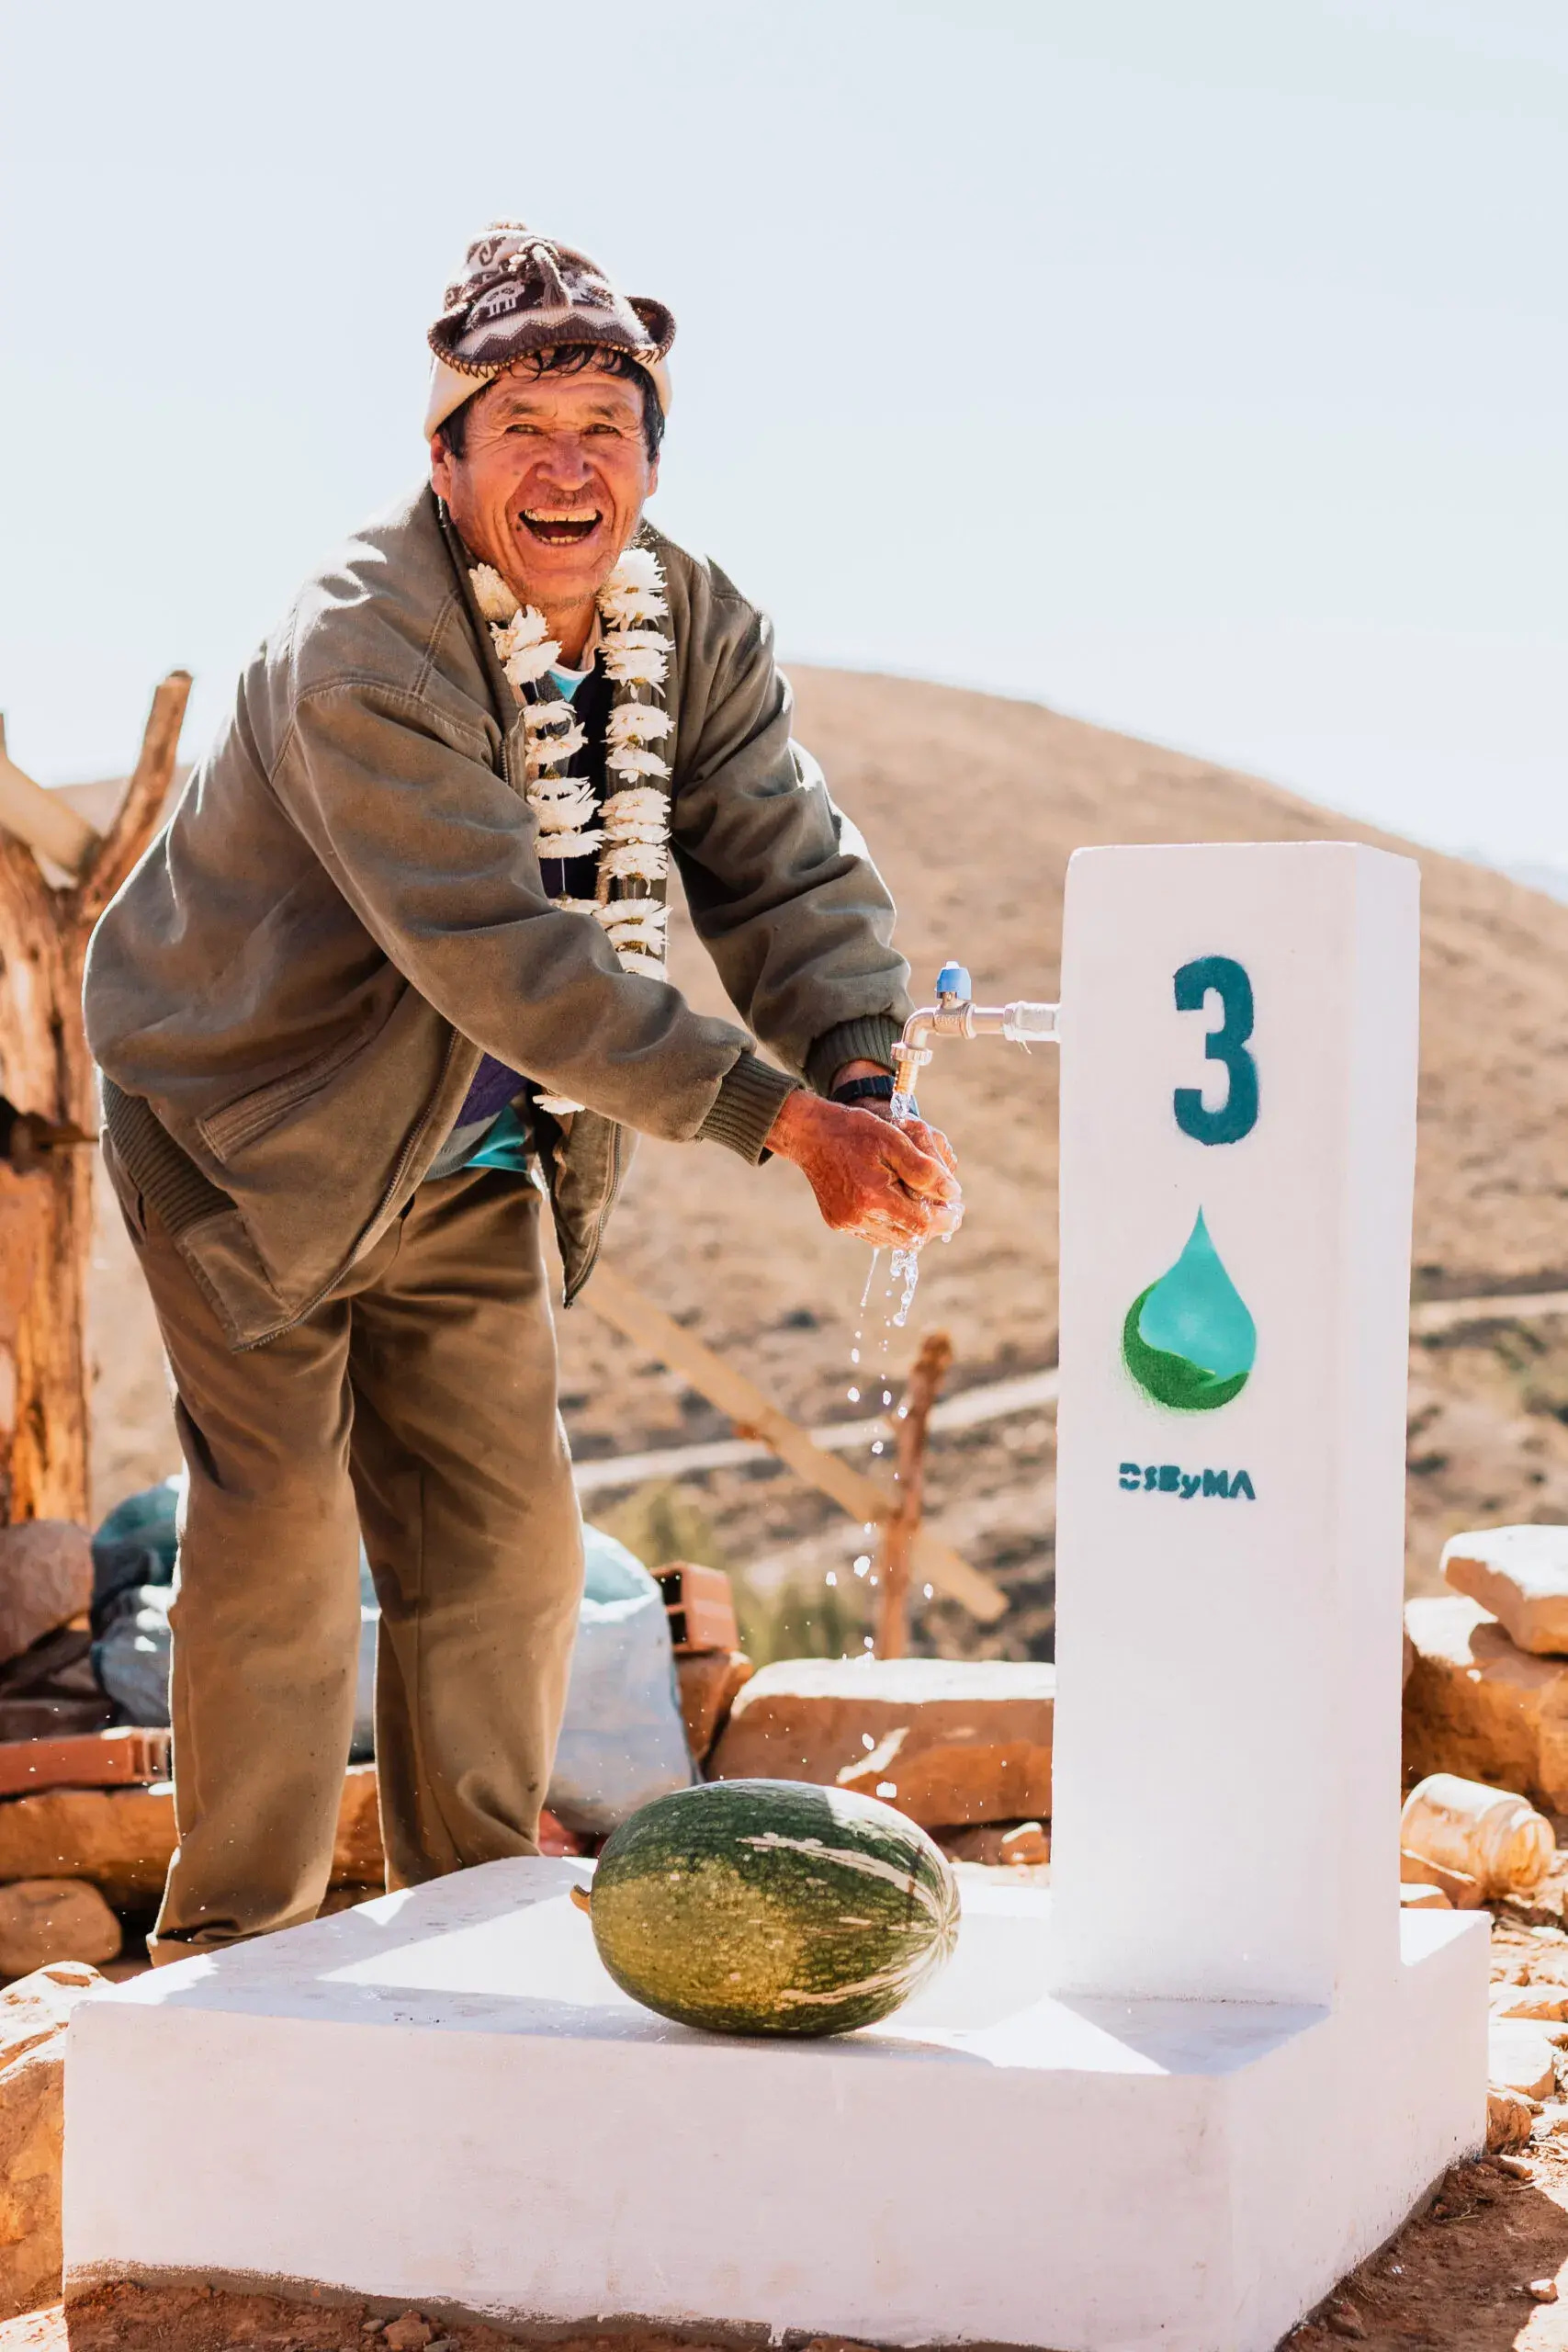 Acceso a agua potable: un logro de Water for People